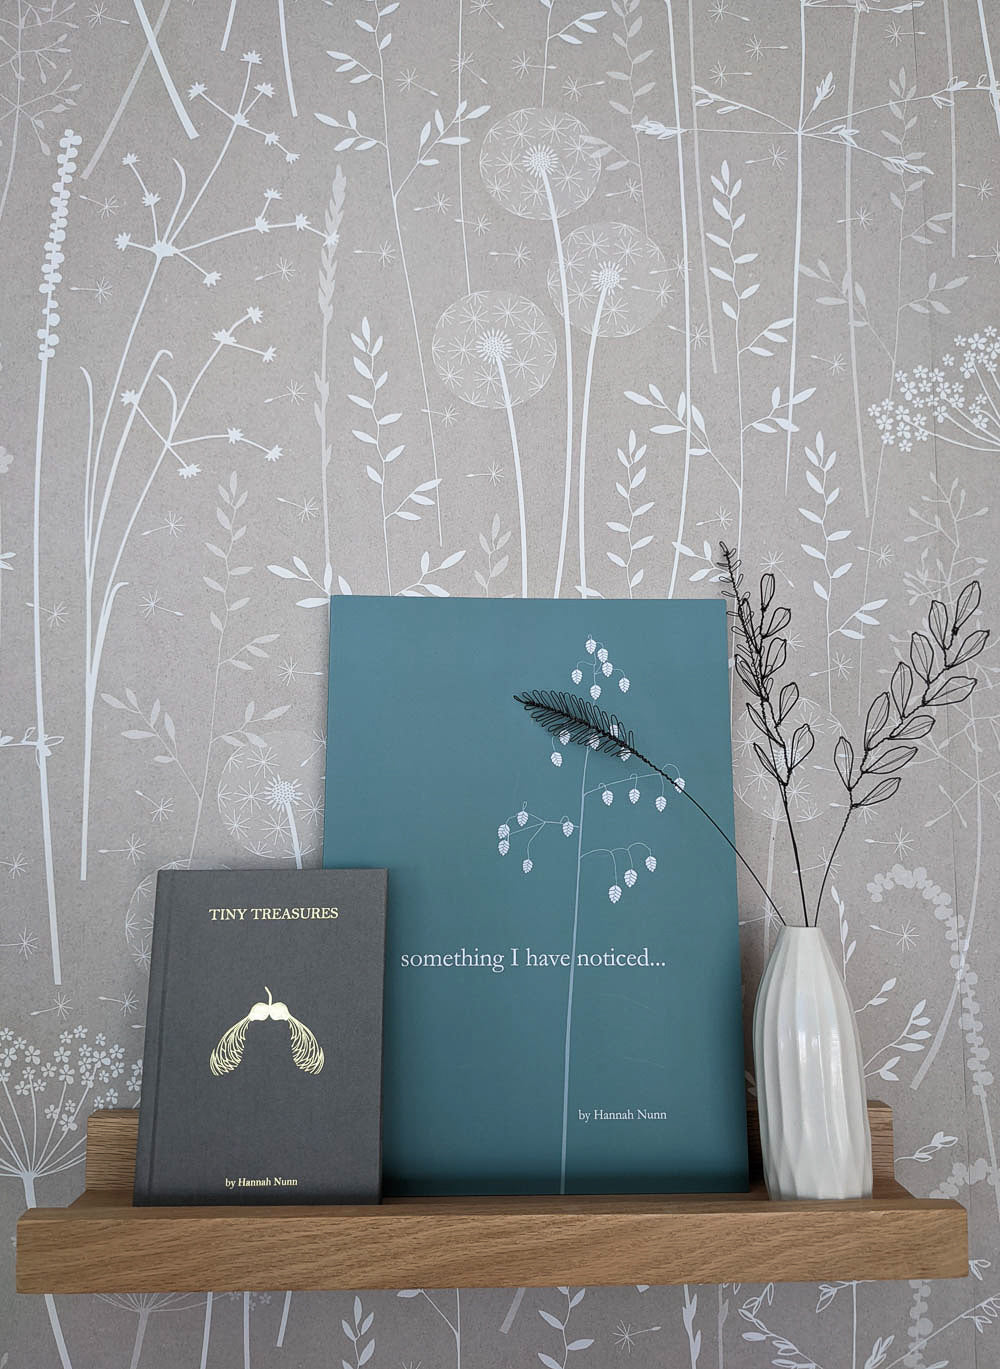 Judith Brown flowers and Hannah Nunn's books